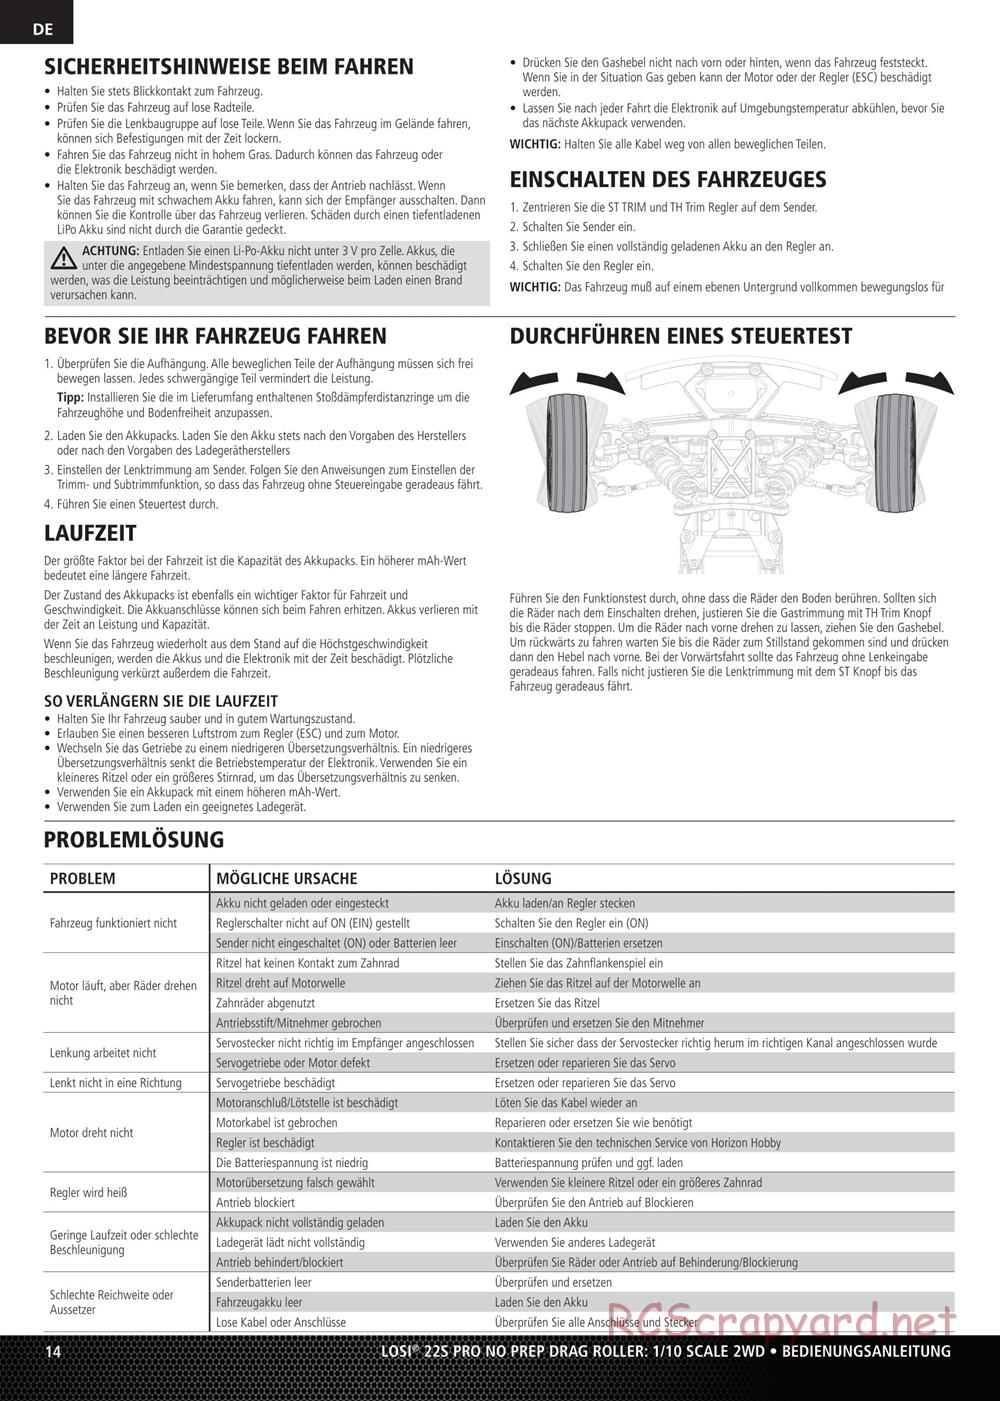 Team Losi - No Prep Drag Roller - Manual - Page 14